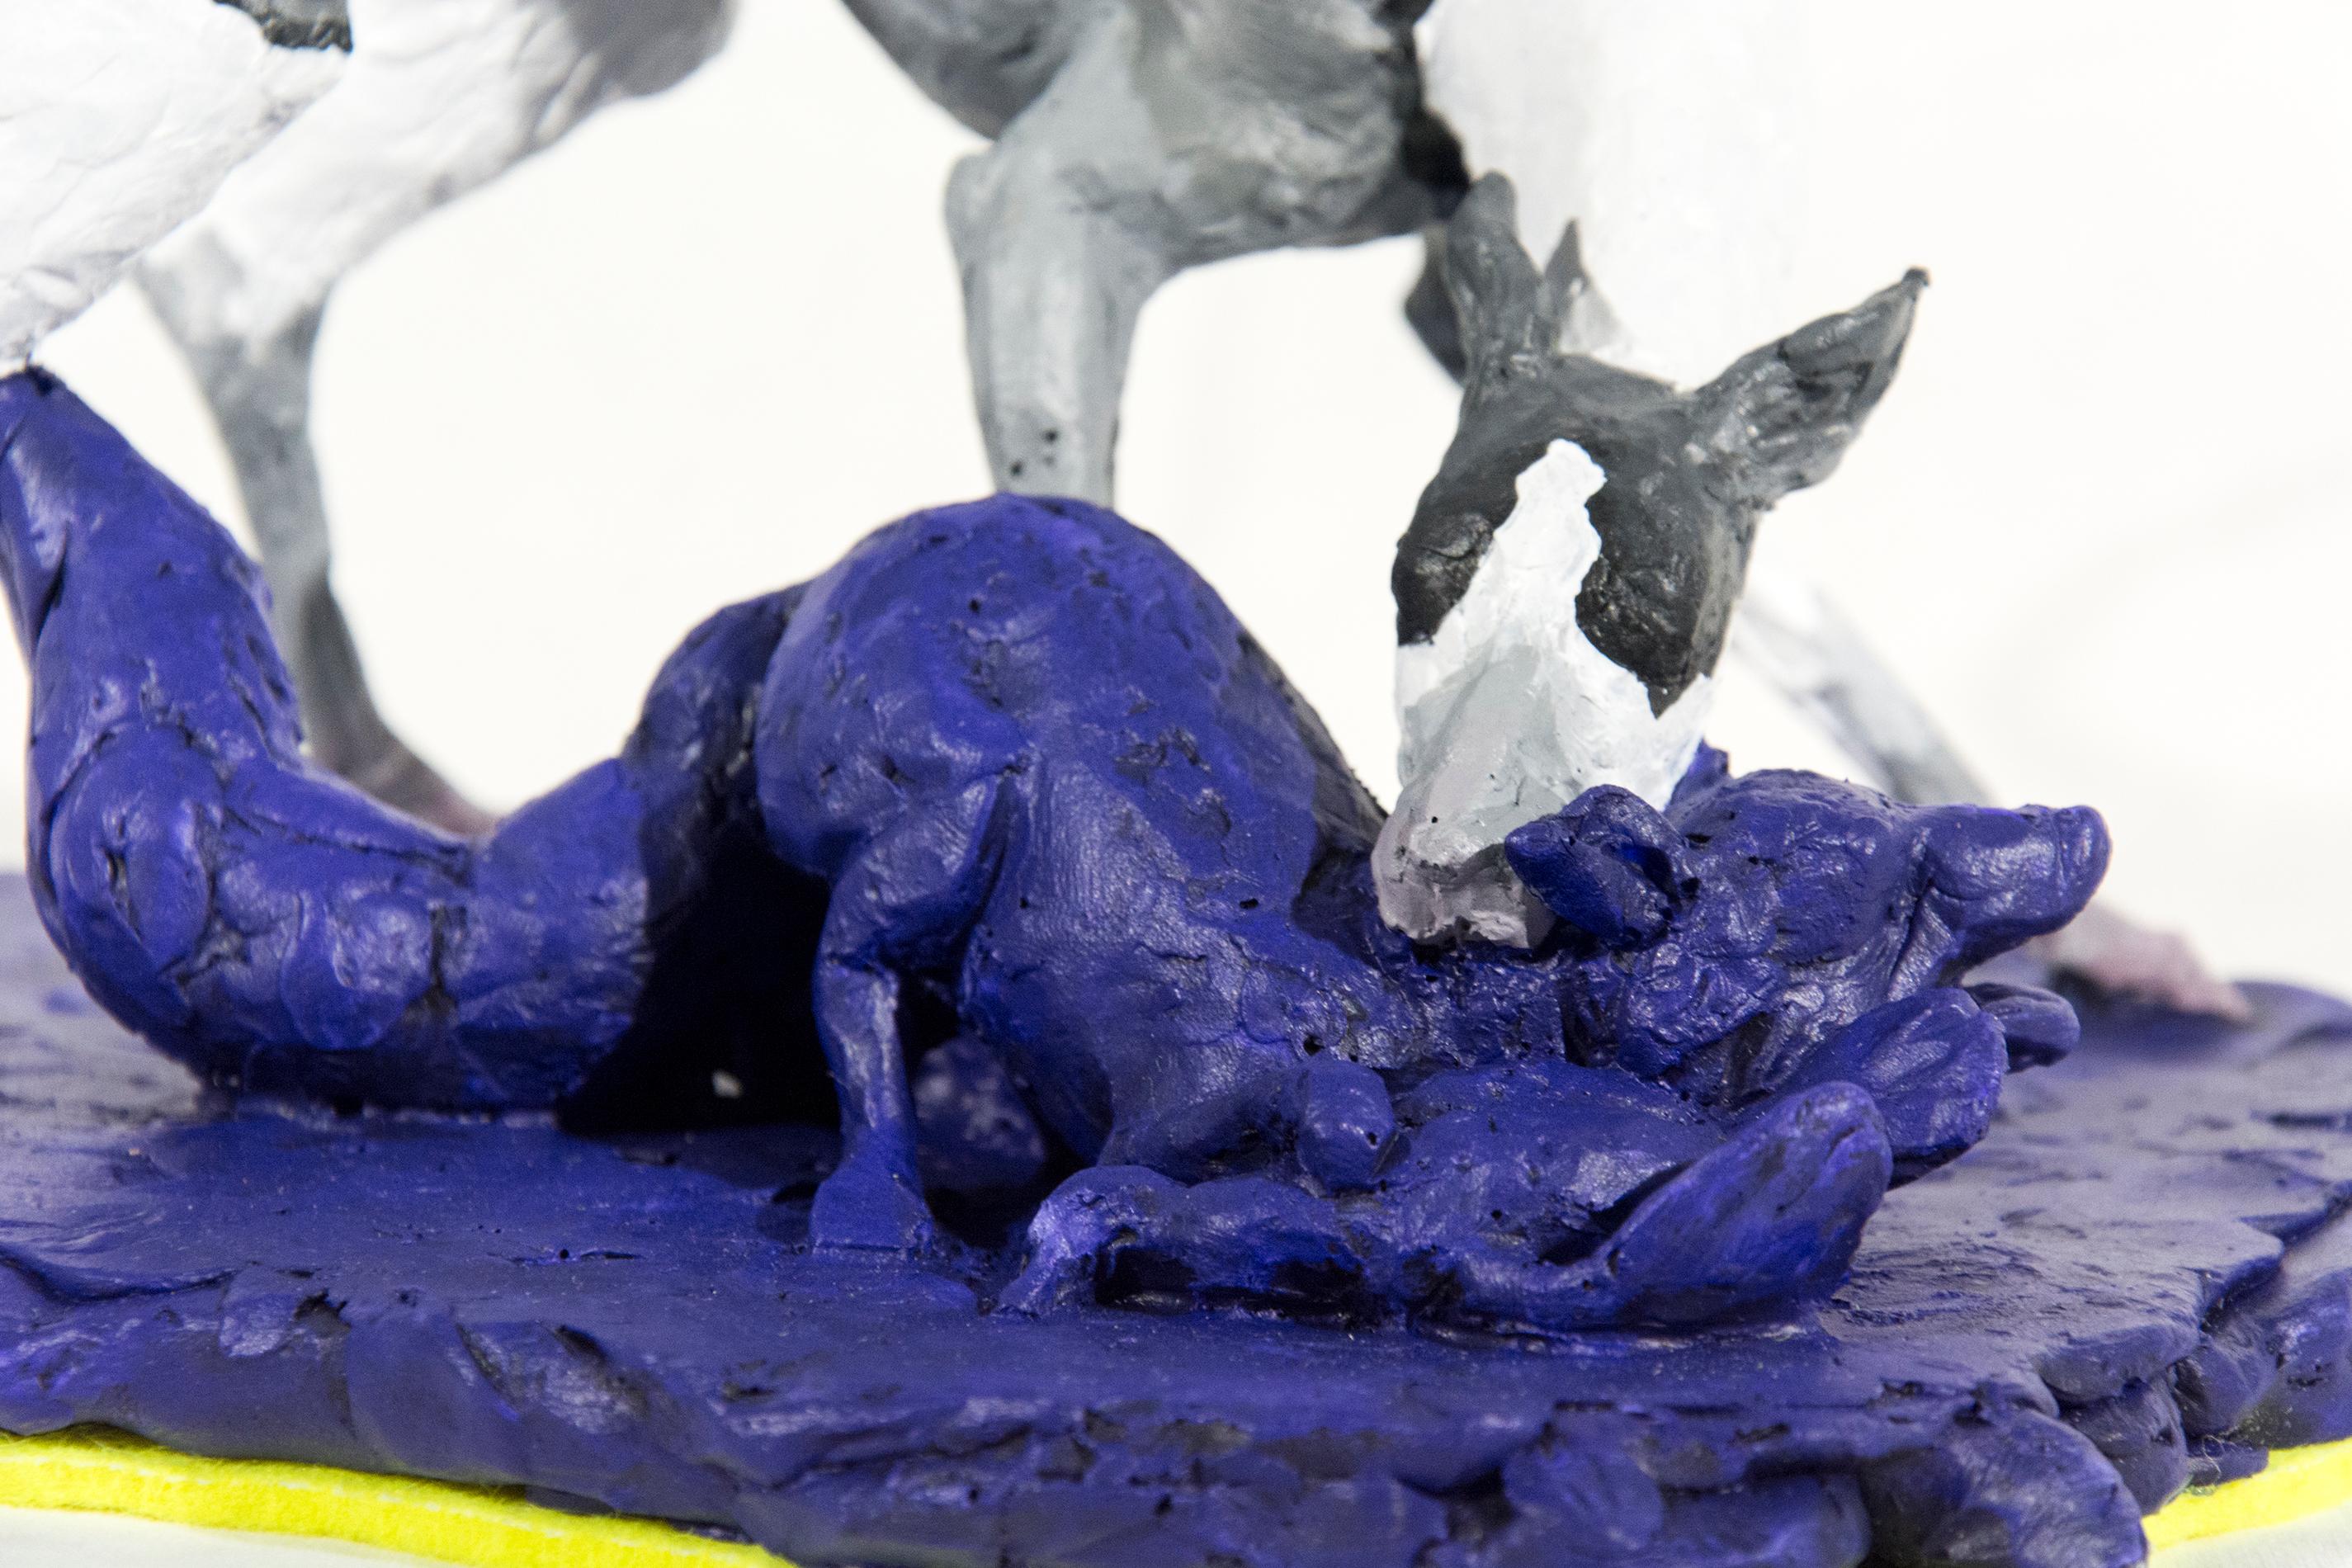 Hound 2/8 - klein, grau, weiß, blau, figurativ, Hund, Wildtiere, Harzskulptur (Zeitgenössisch), Sculpture, von Nicholas Crombach